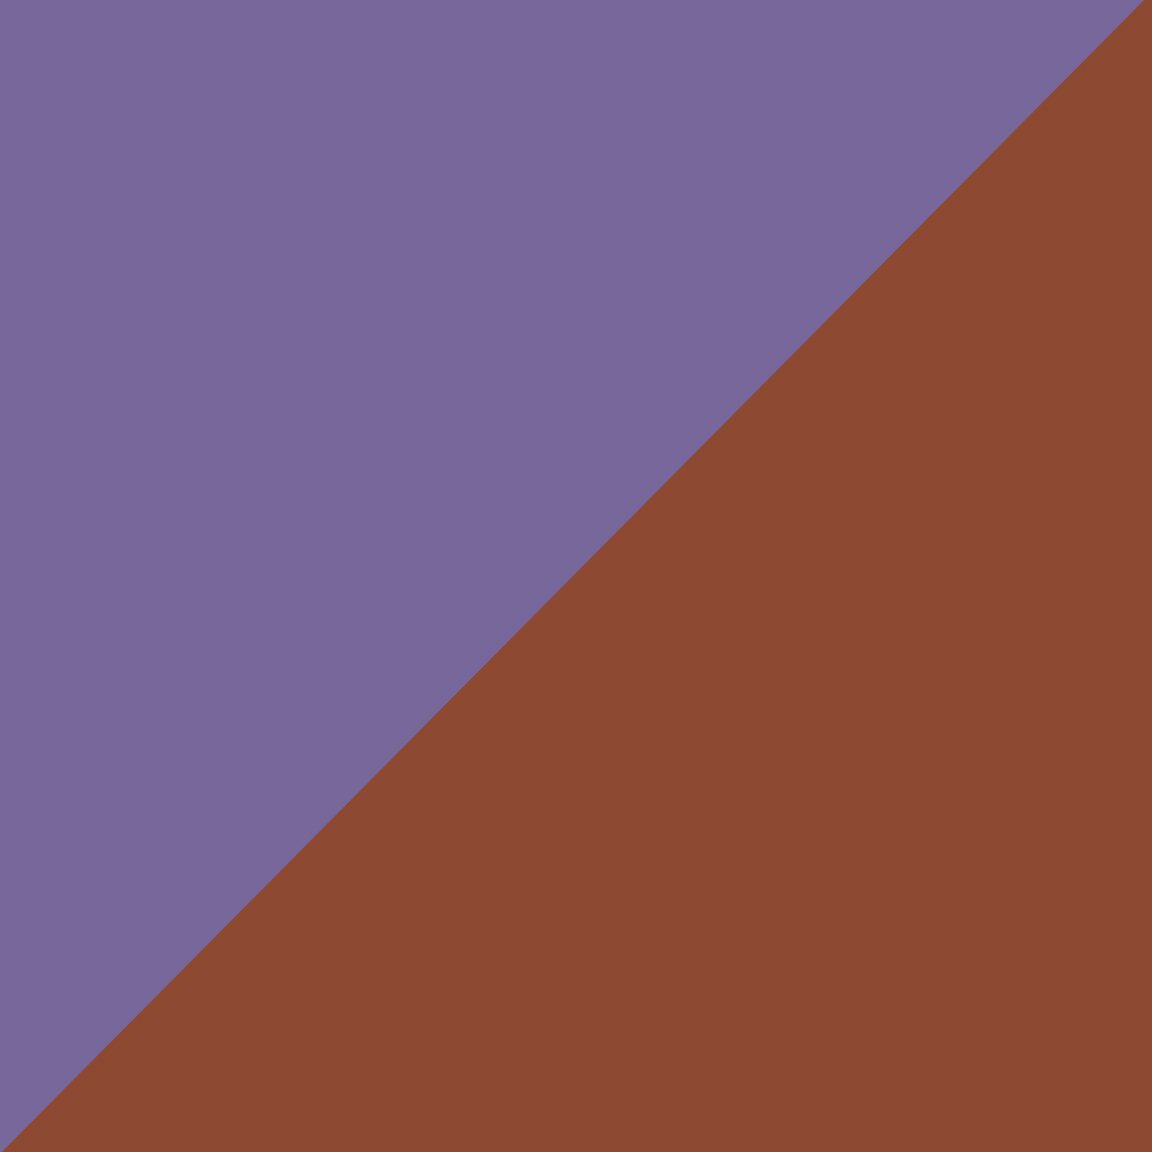 Lilac/Copper Brown